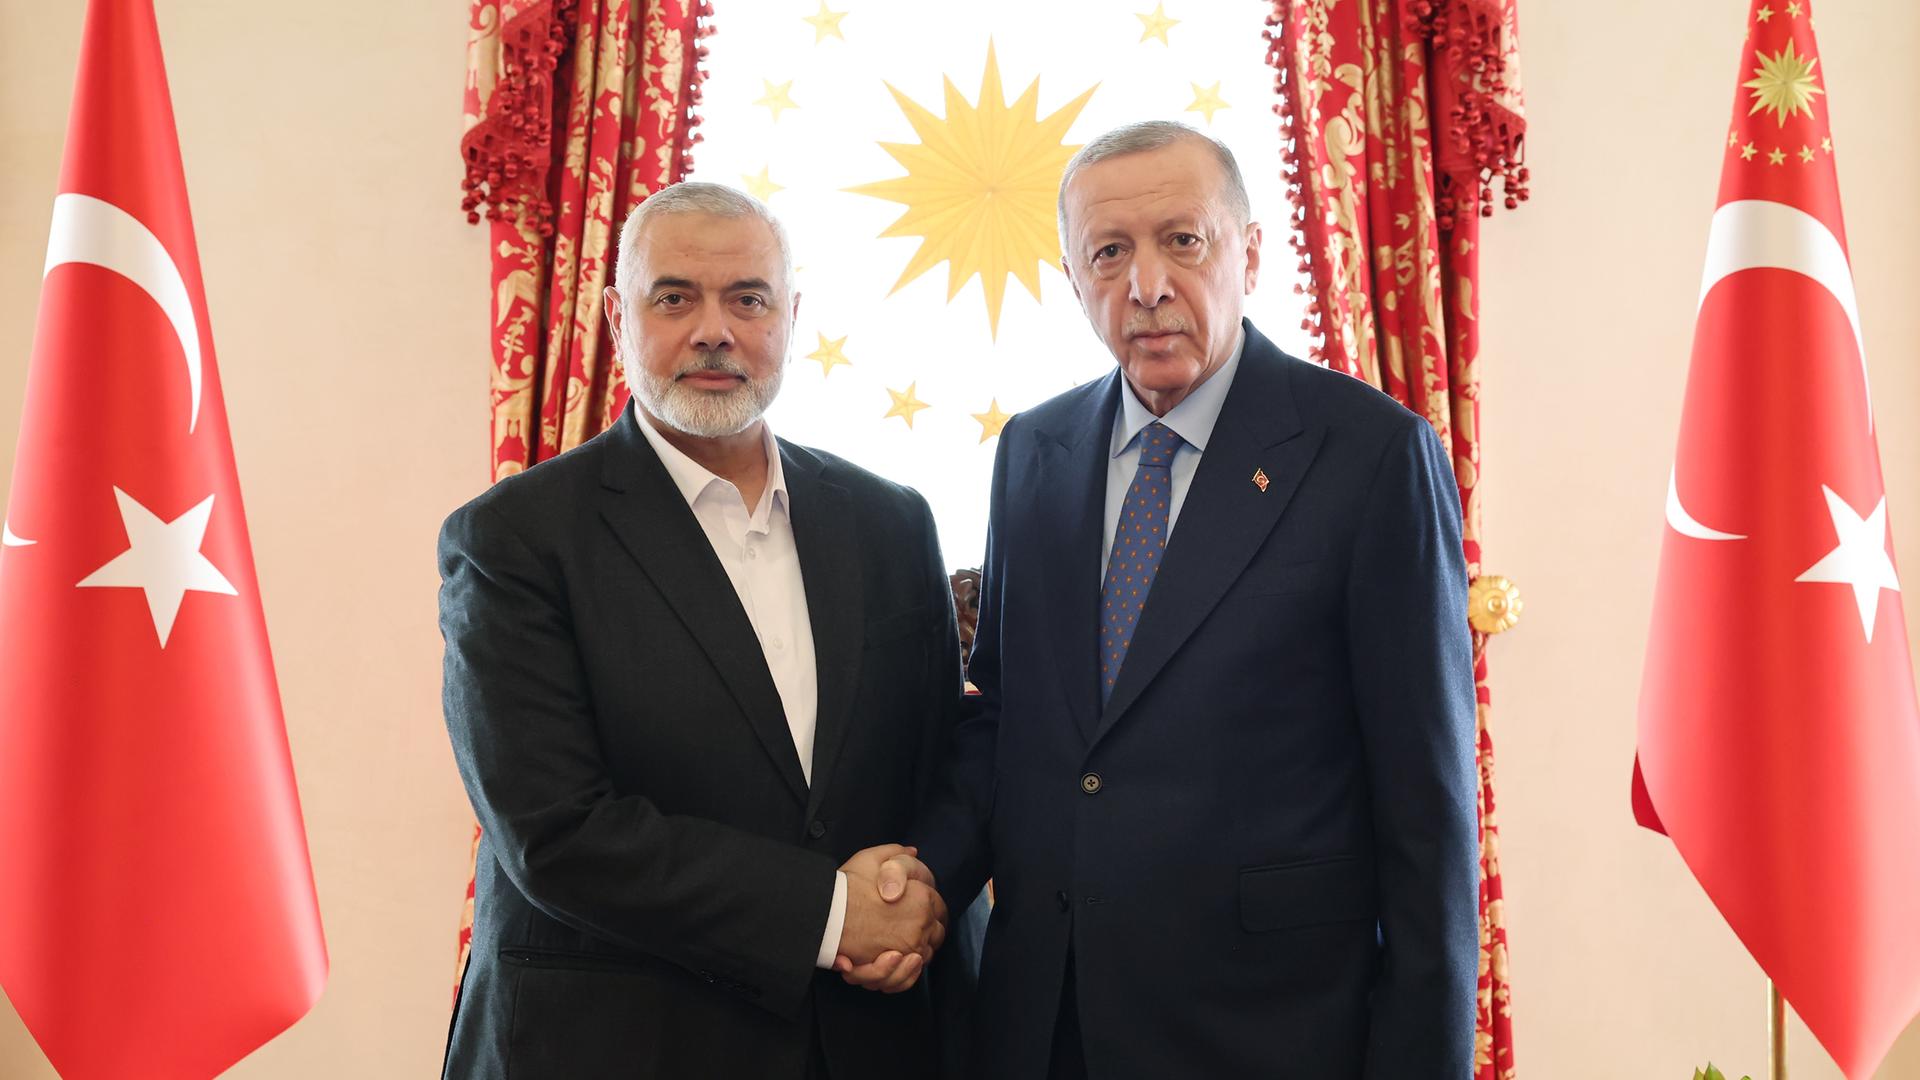 Der türkische Präsident Recep Tayyip Erdogan und Hamas-Führer Ismail Haniyeh in Istanbul inmitten türkischer Fahnen.  